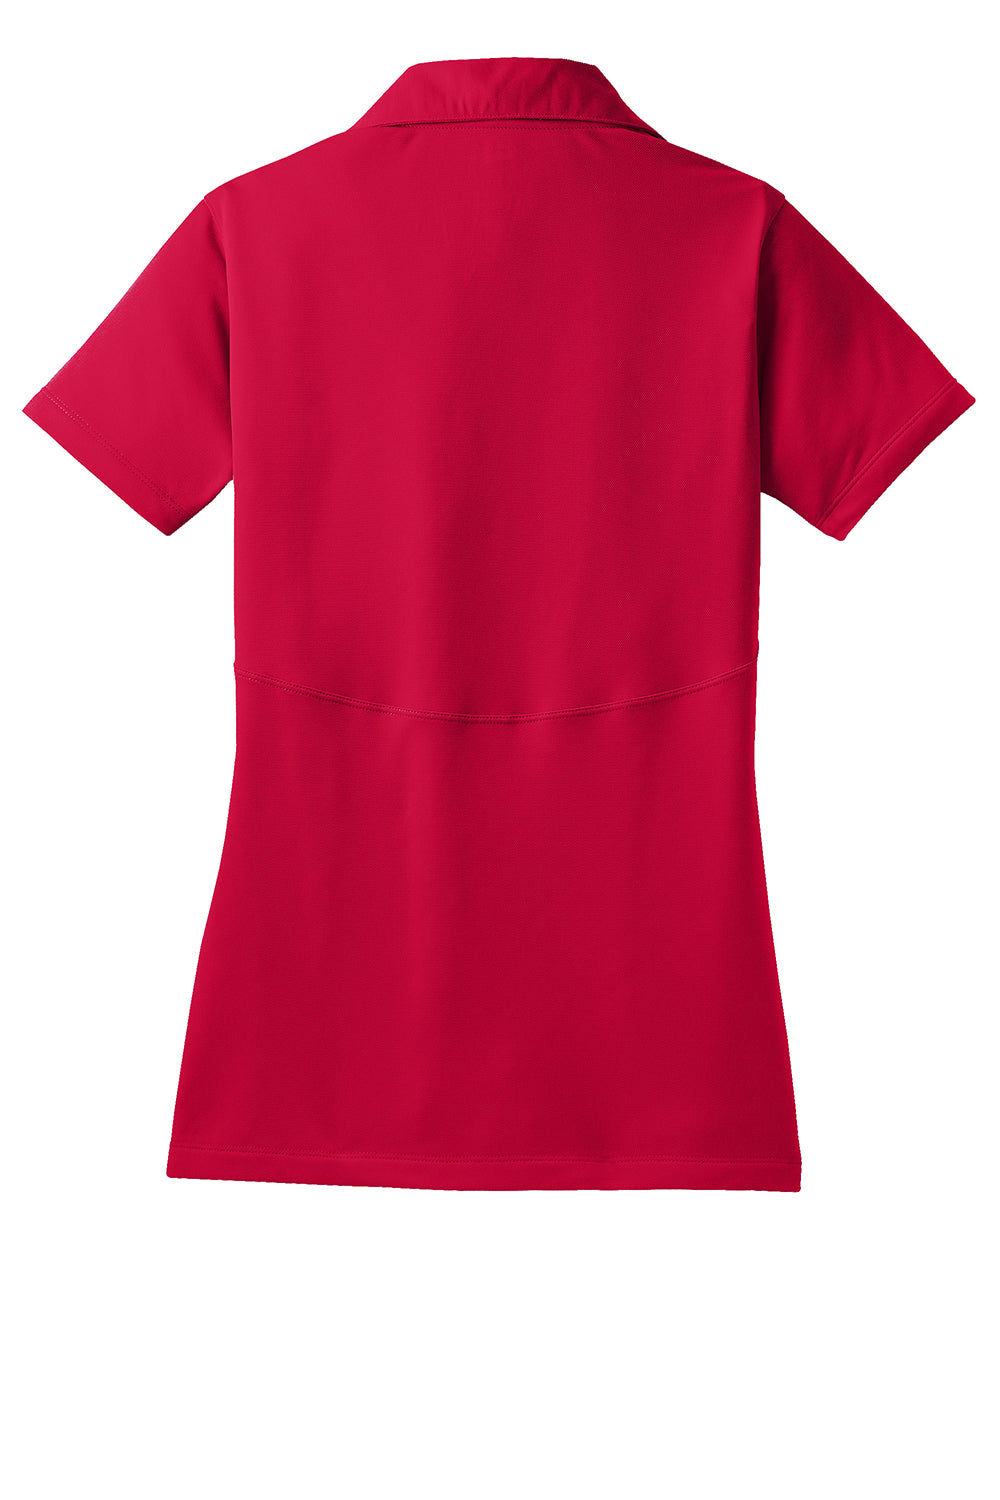 Sport-Tek LST650 Womens Sport-Wick Moisture Wicking Short Sleeve Polo Shirt Deep Red Flat Back